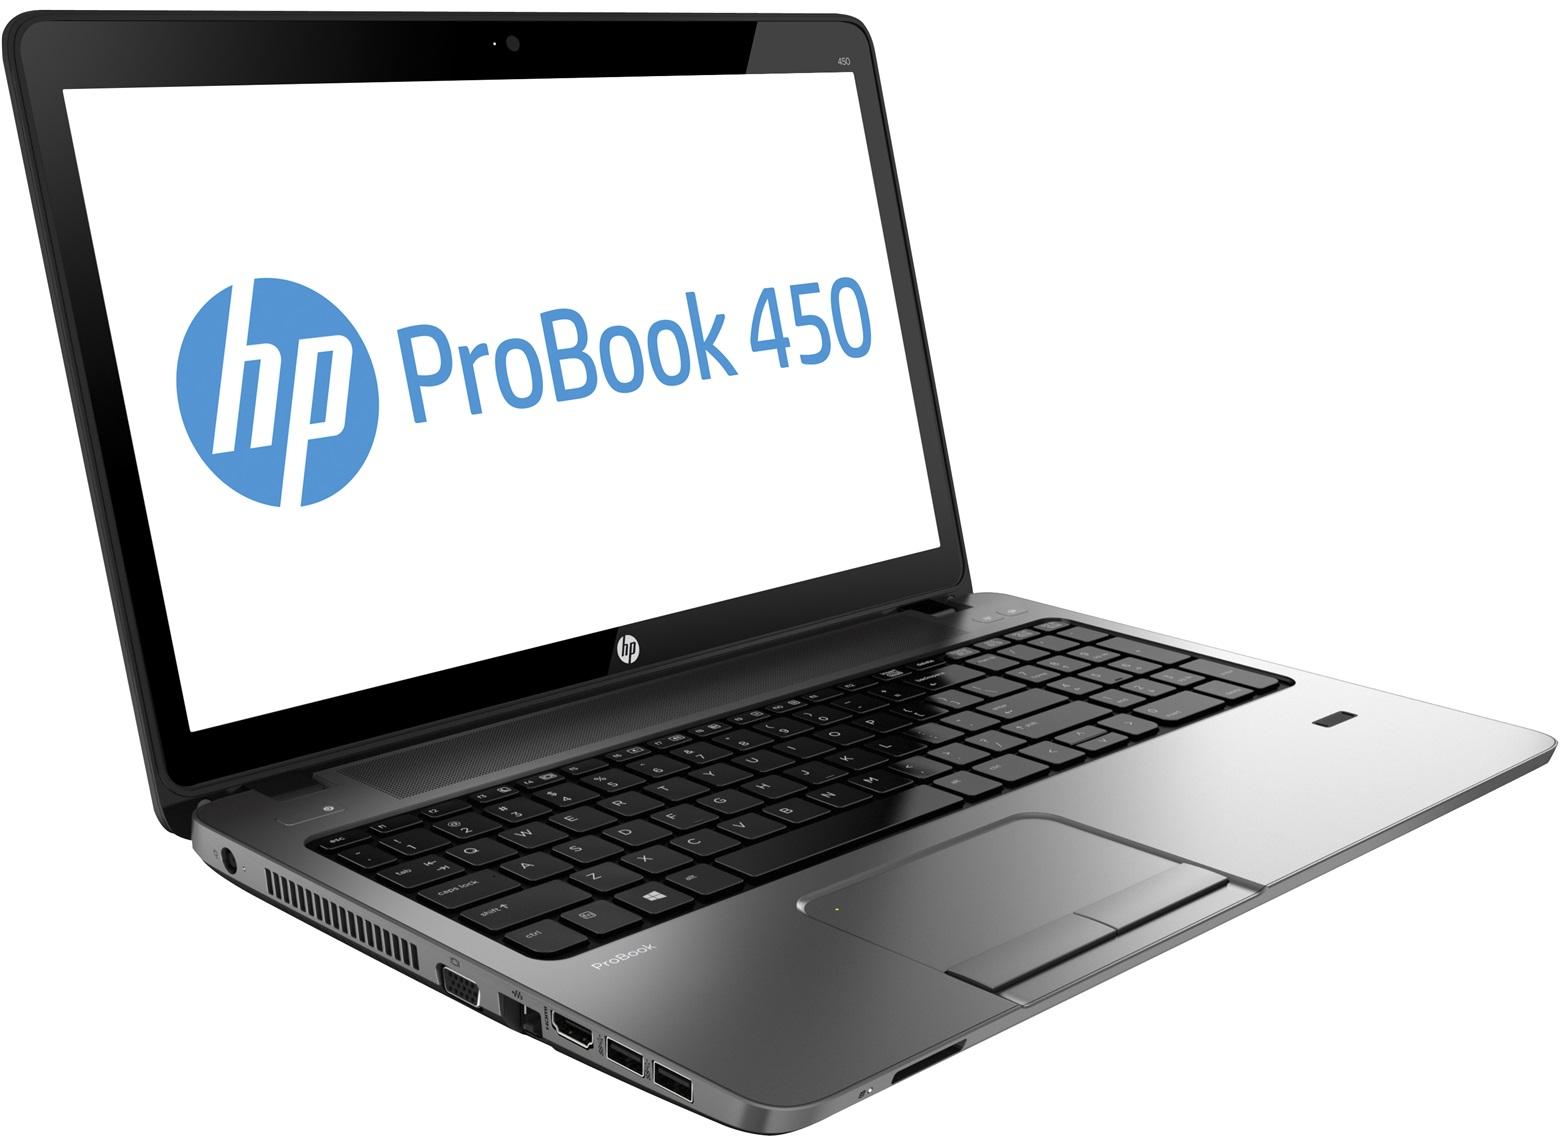 Hp Probook 450 G1 i5-4200M Ram 4gb SSD 120GB